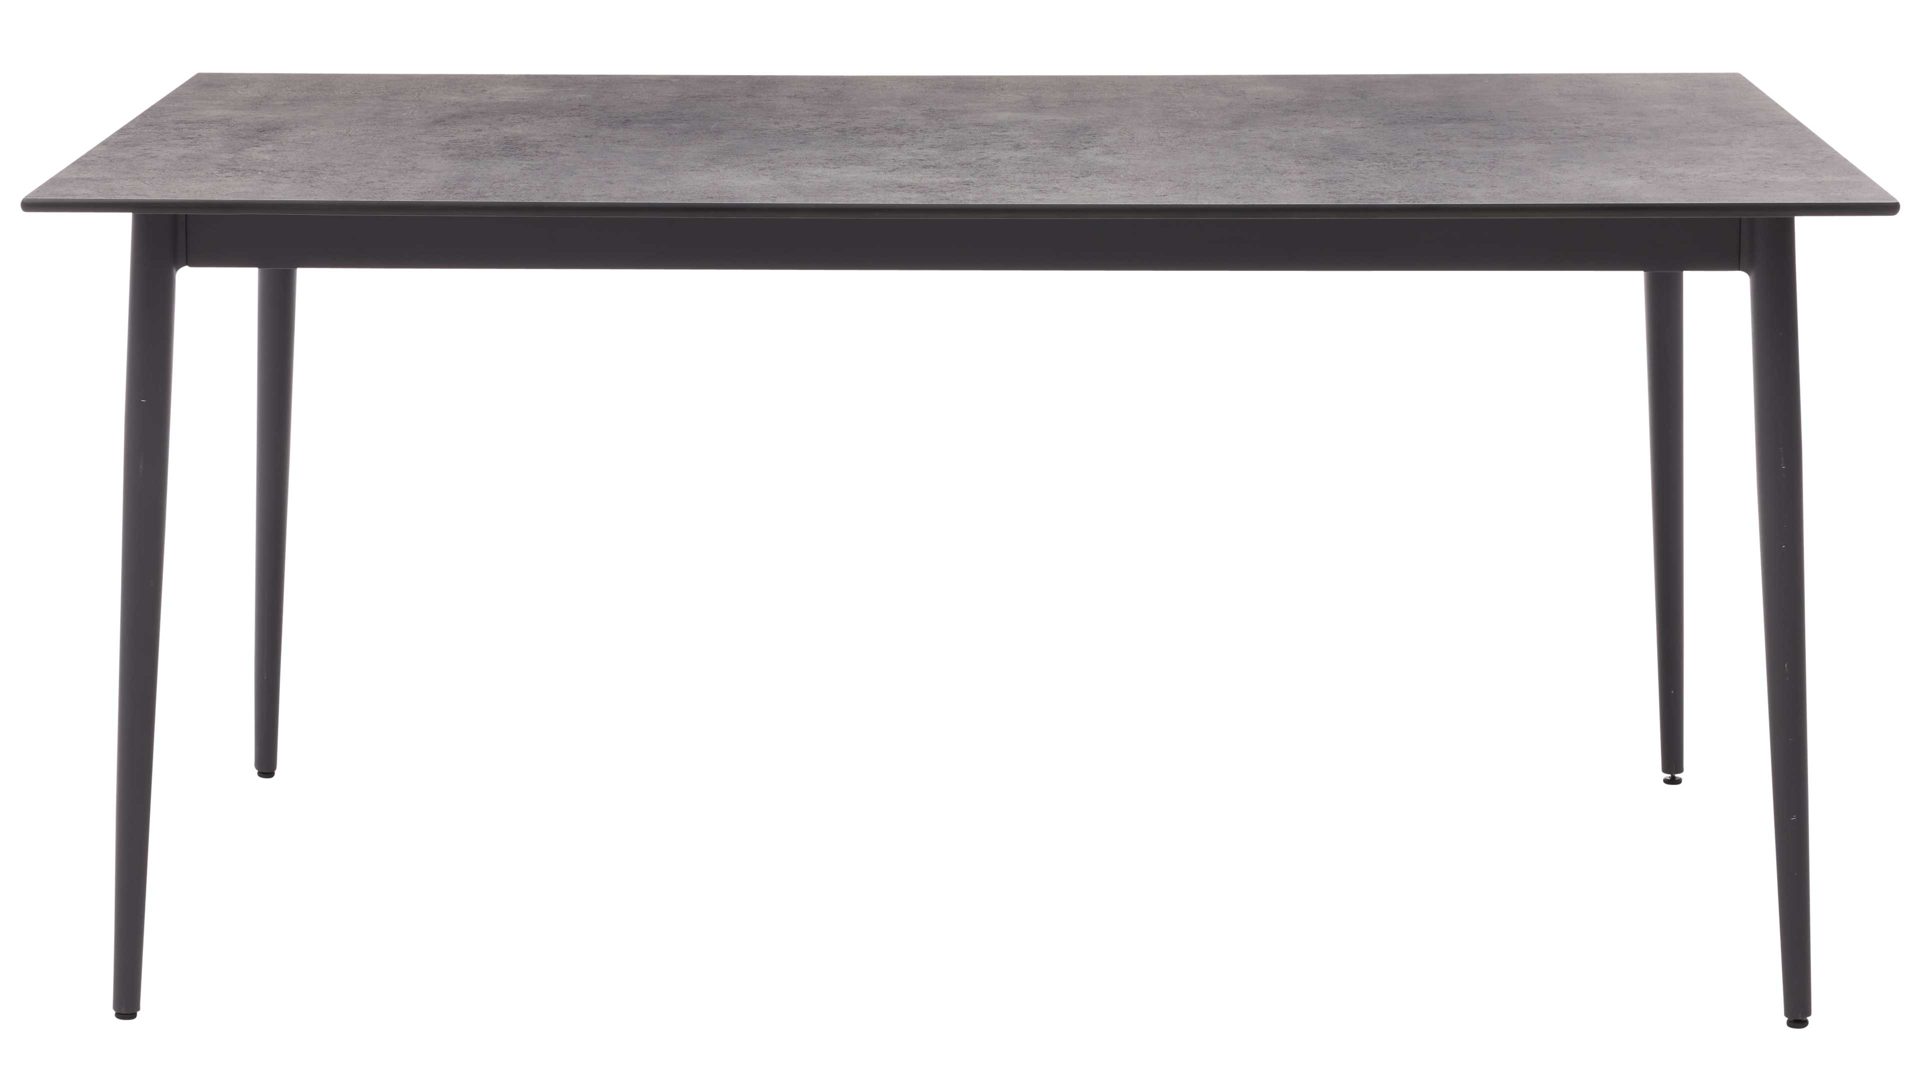 Gartentisch Interliving aus Holz in Grau Interliving Gartenmöbel Serie 7003 – Tisch G113-004-082 HPL Beton & Aluminium - ca. 220 x 95 cm